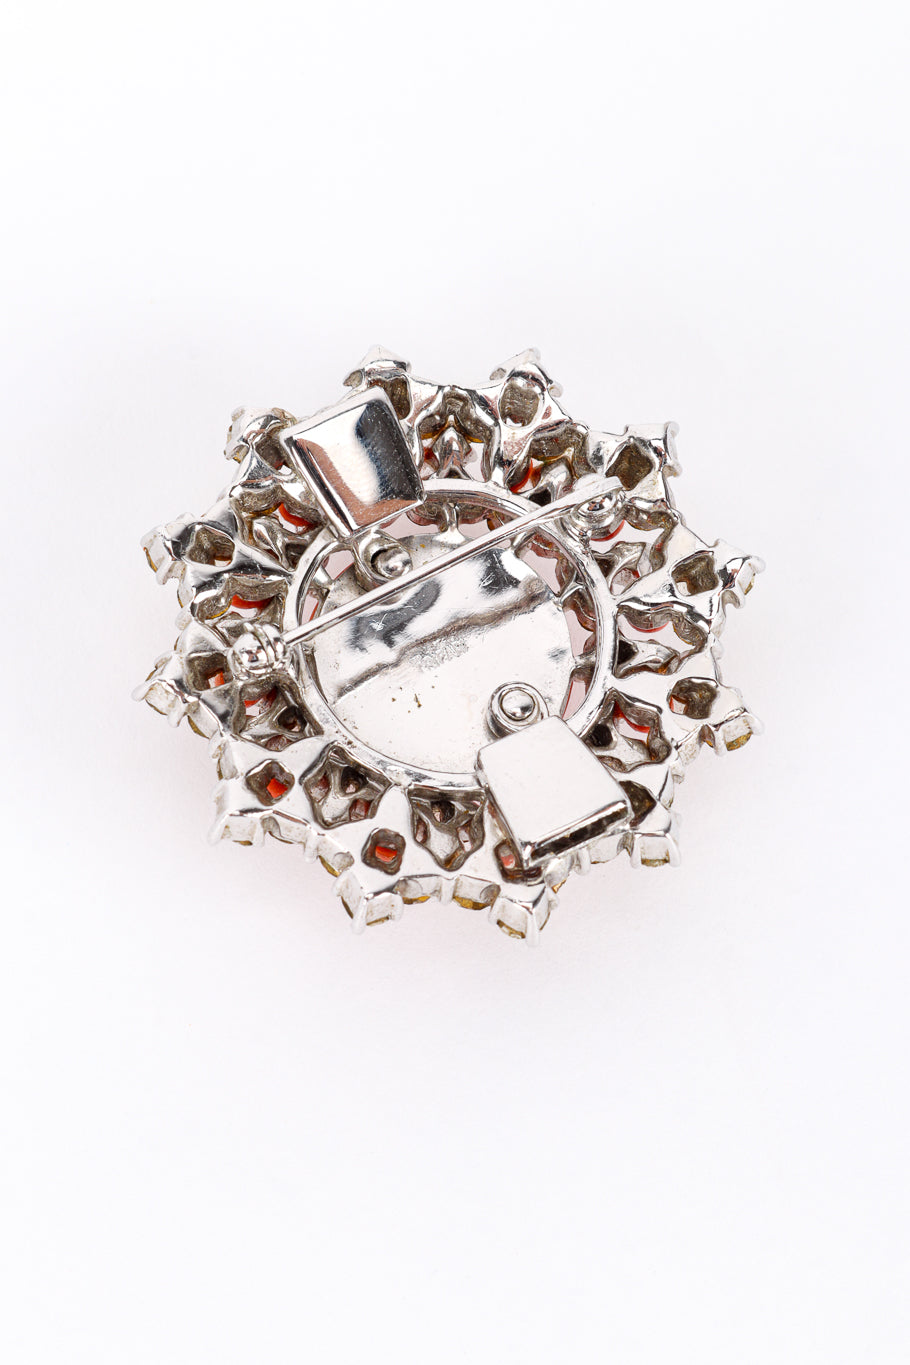 Vintage Trifari Coral Lucite Necklace & Earring Set pendant brooch back @recess la